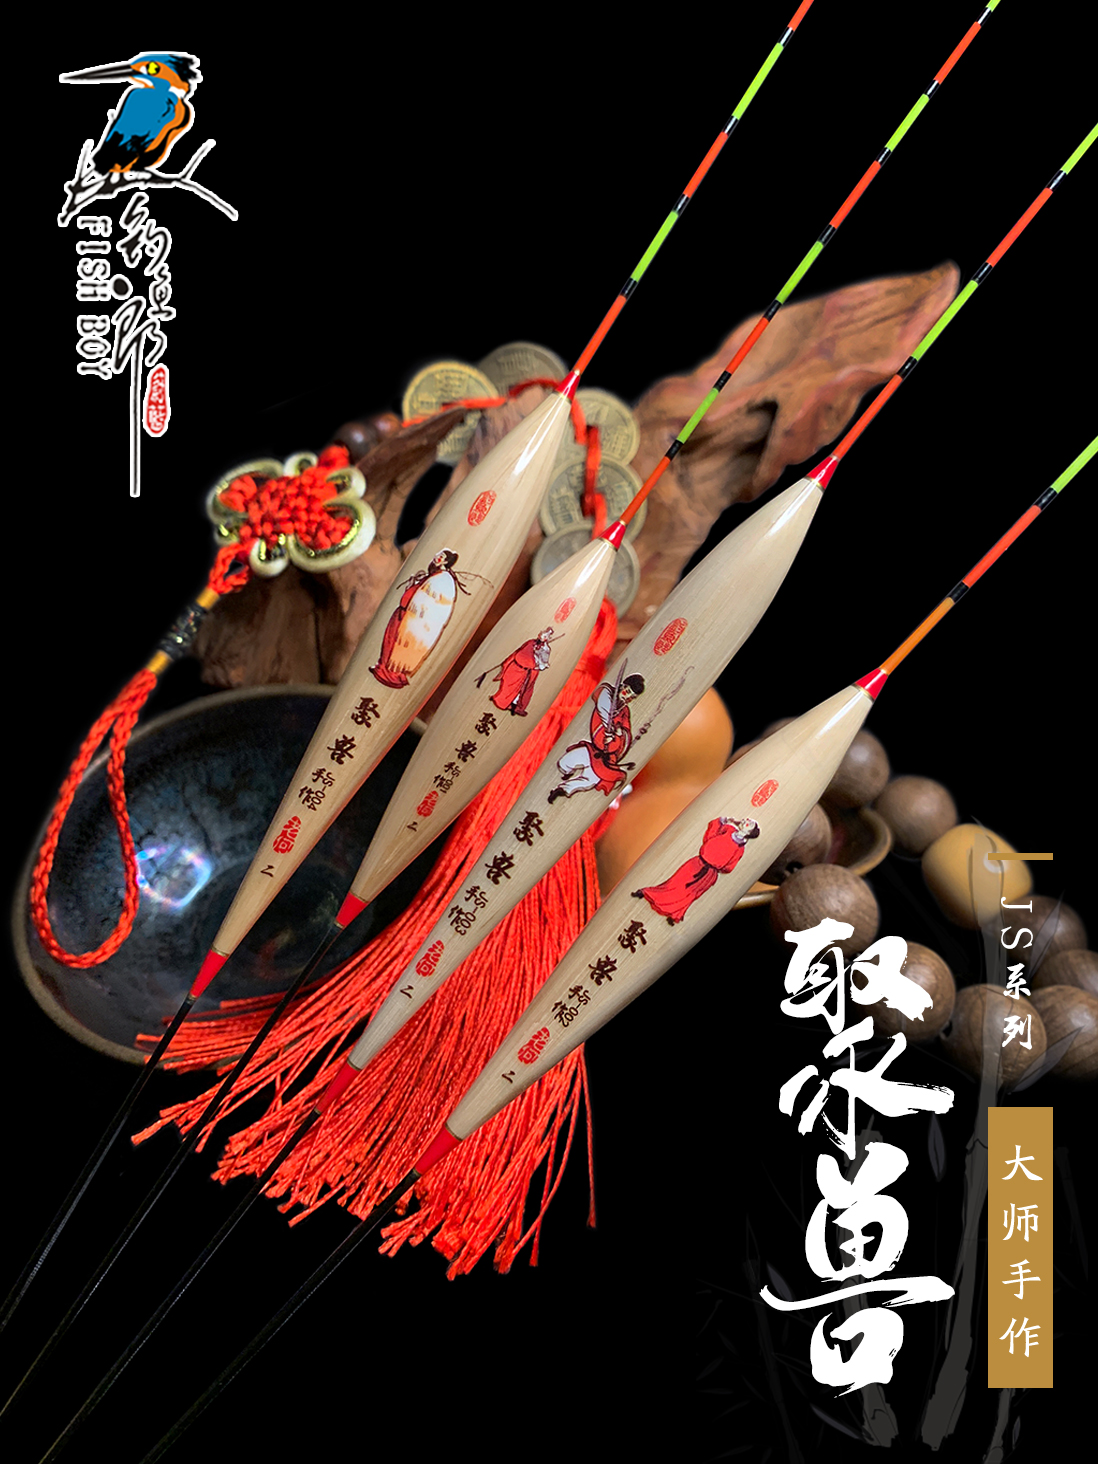 钓鱼郎(聚兽)系列  芦苇材质 青鱼鲟鱼鲢鳙鲤鱼草鱼深水大物专属